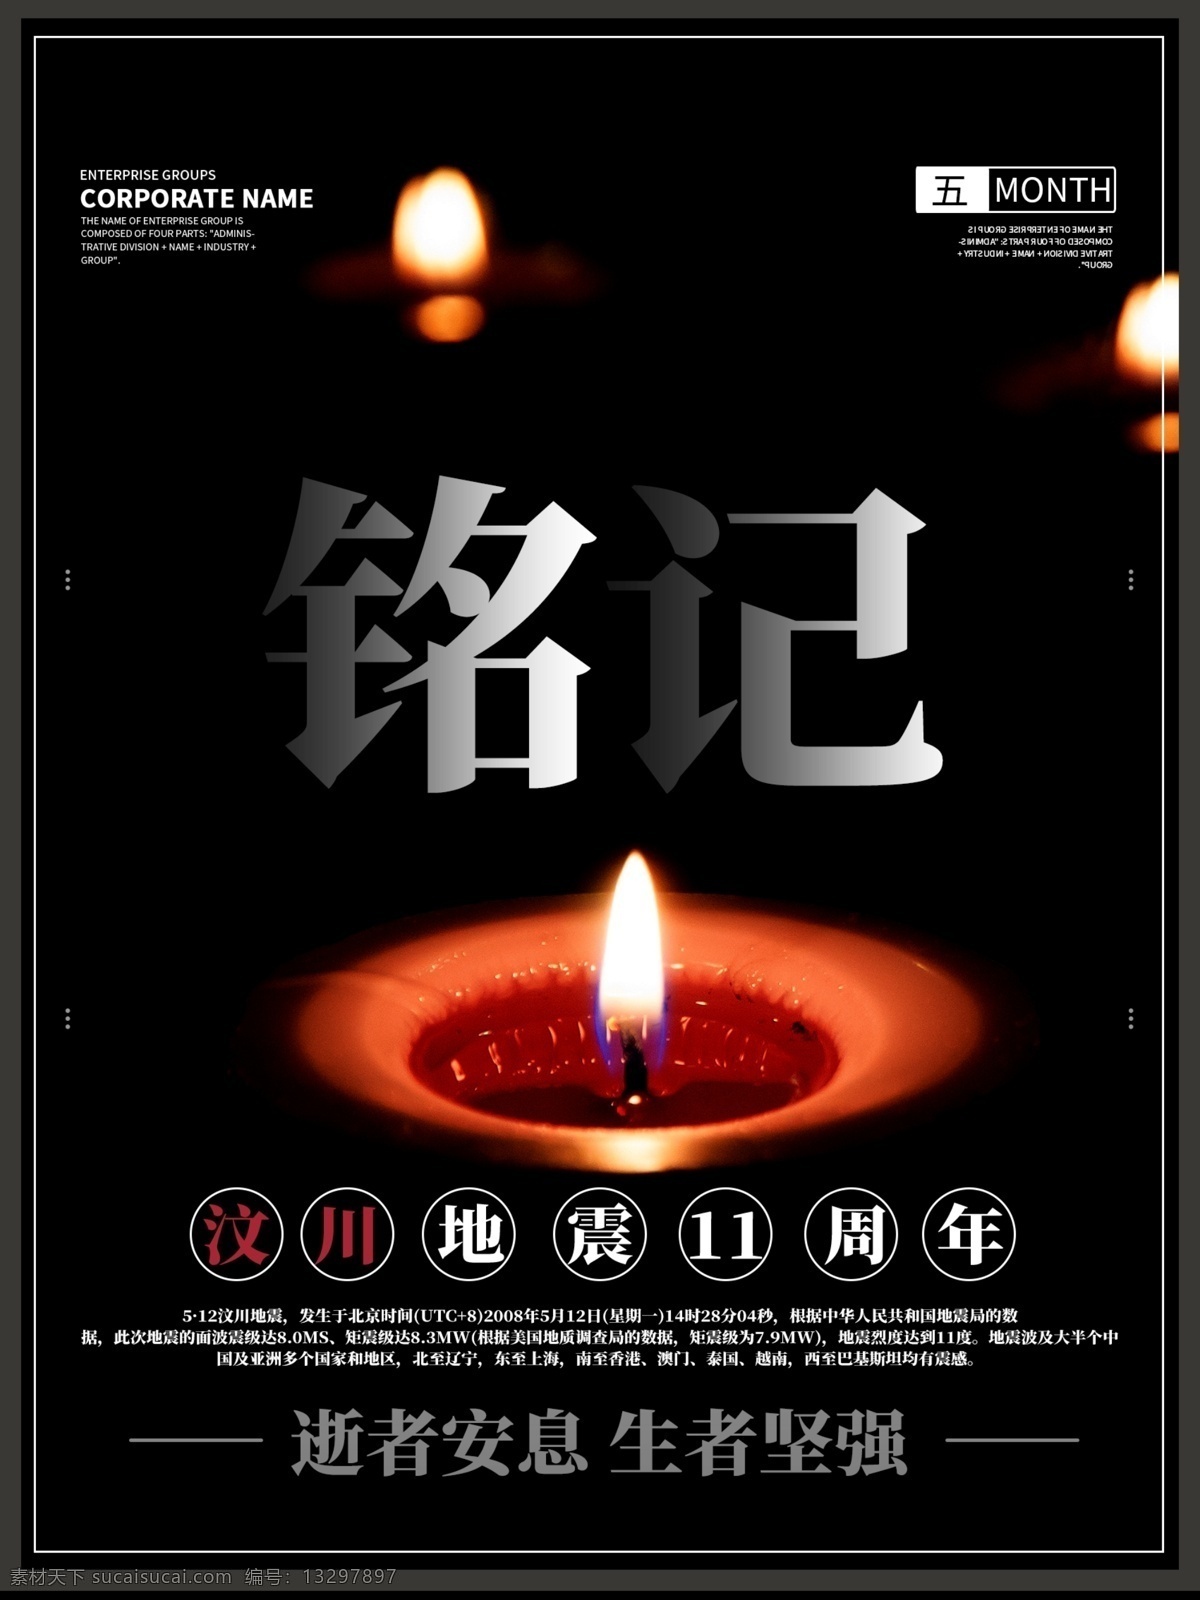 汶川 地震 周年纪念 海报 11周年 纪念 黑色 简约 商务 简约风 商务风